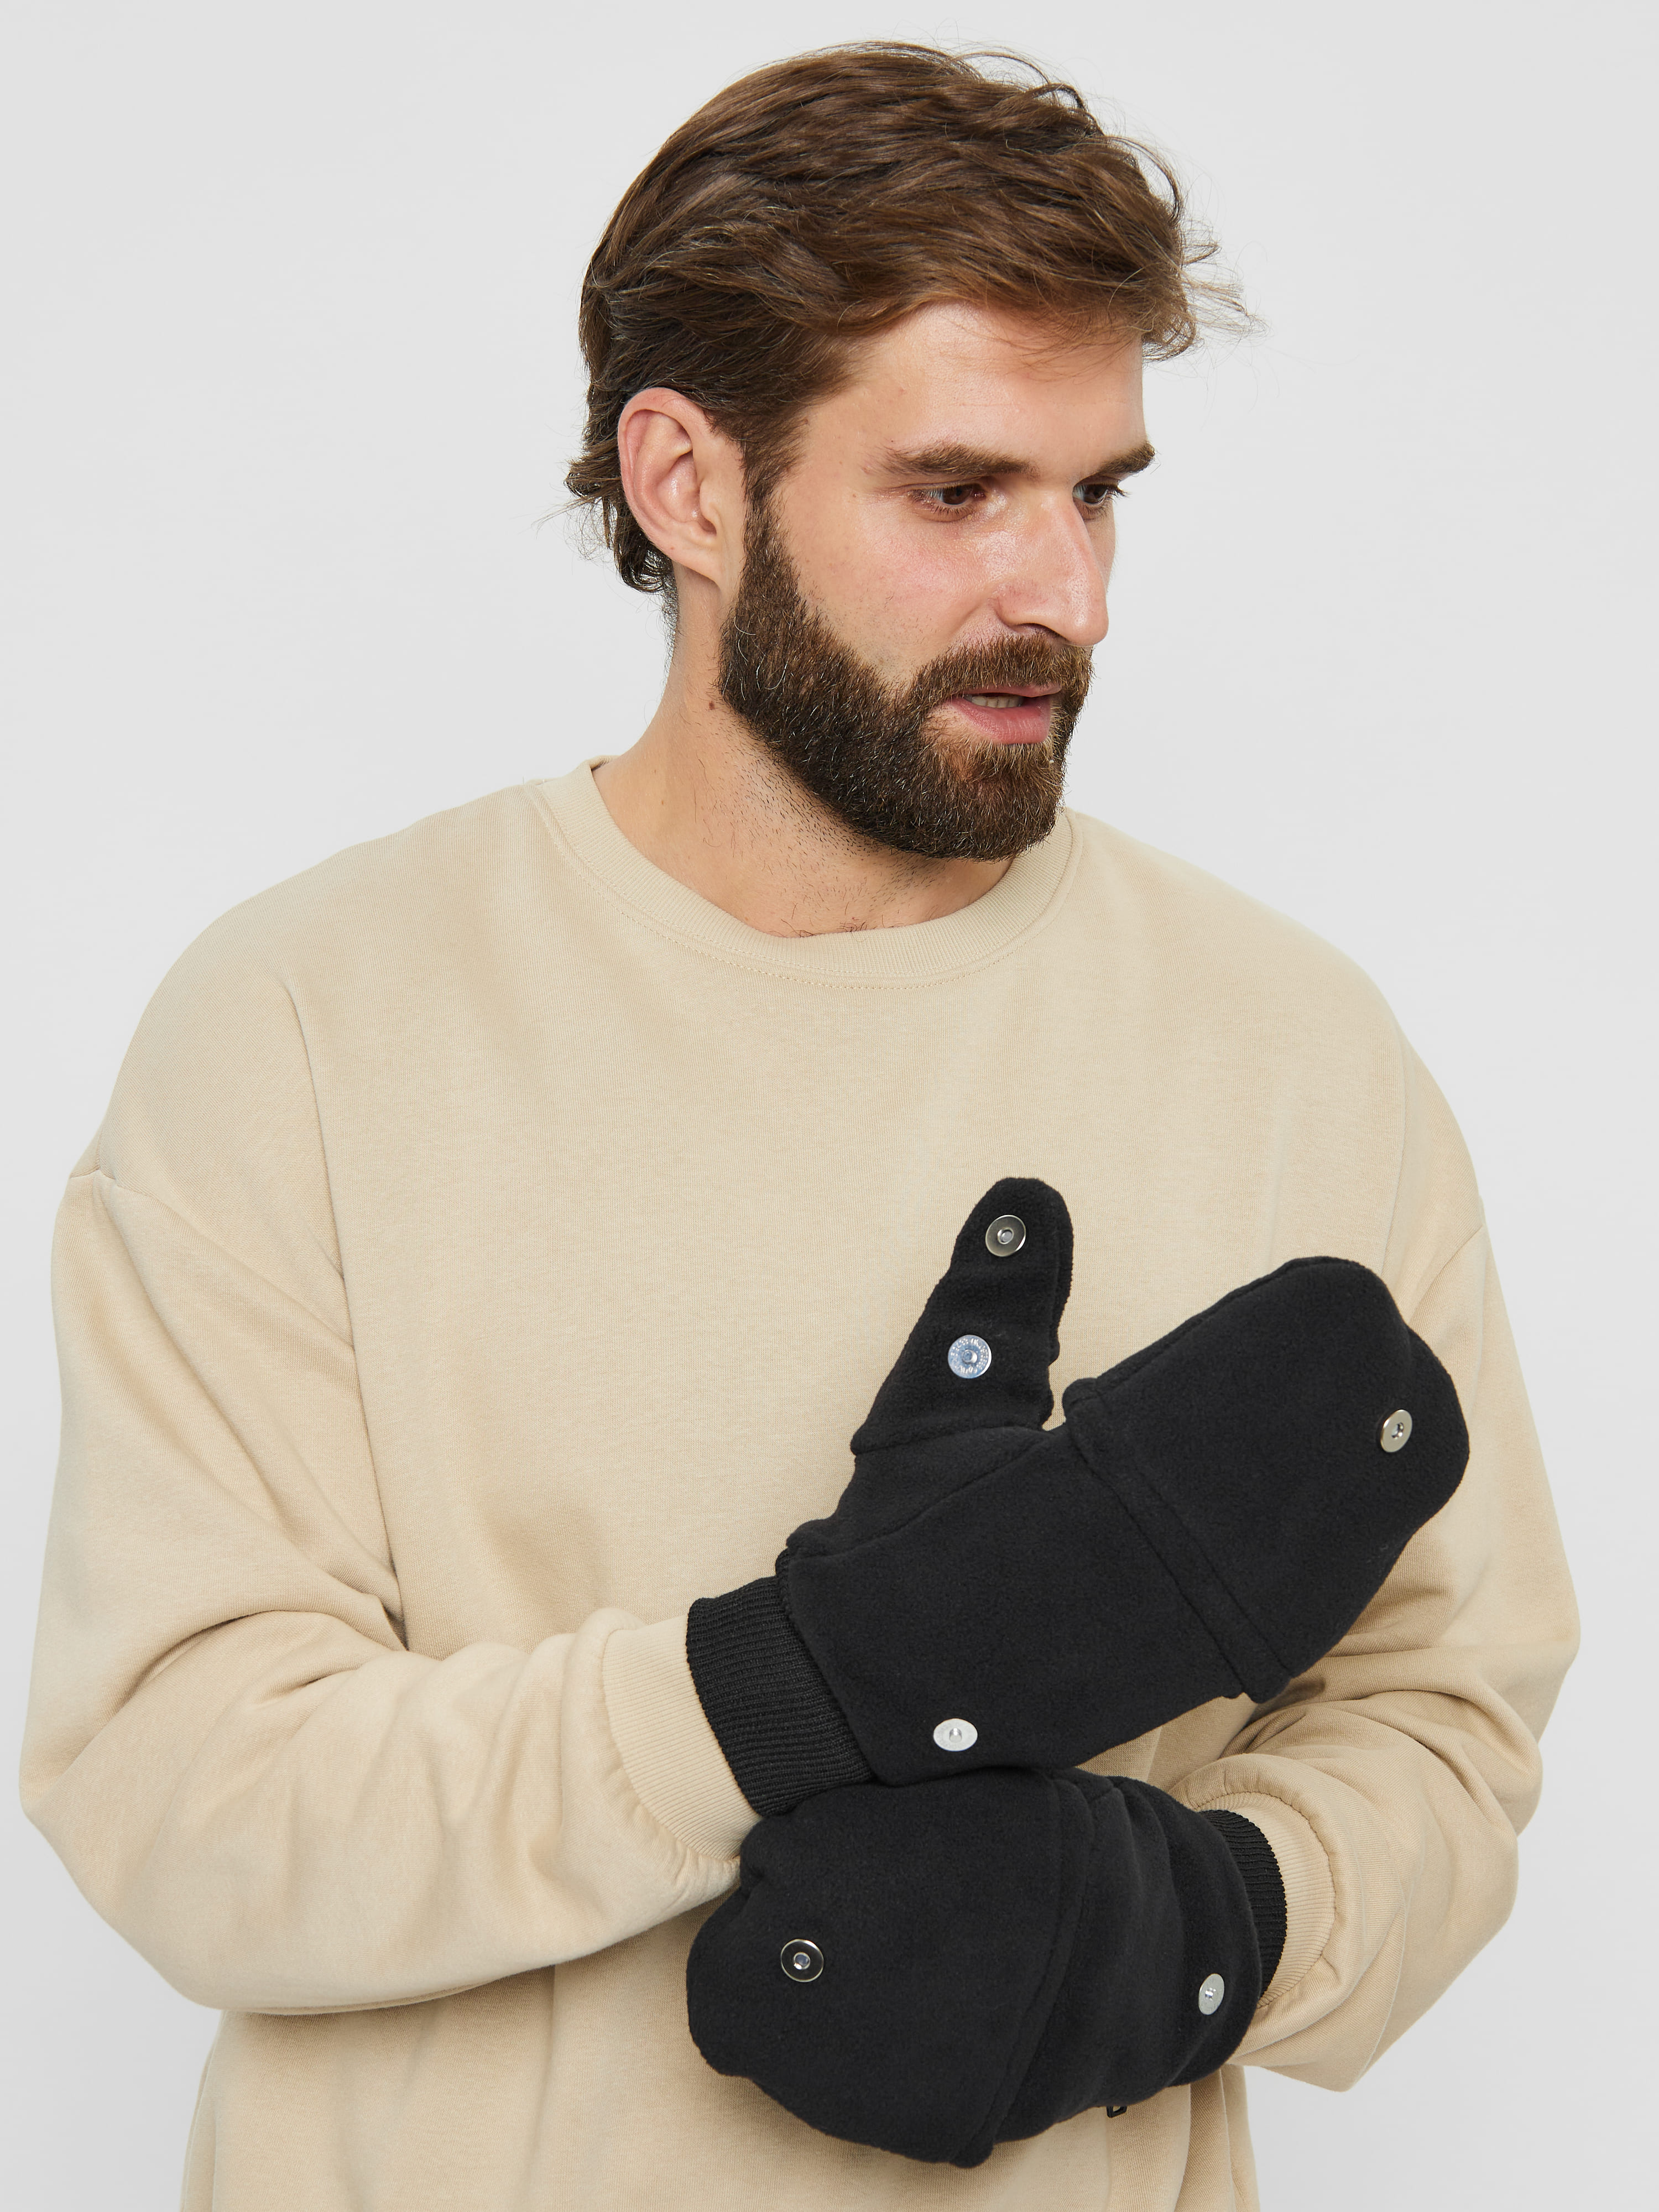 Варежки-перчатки (чёрные) из флиса оптом и в розницу